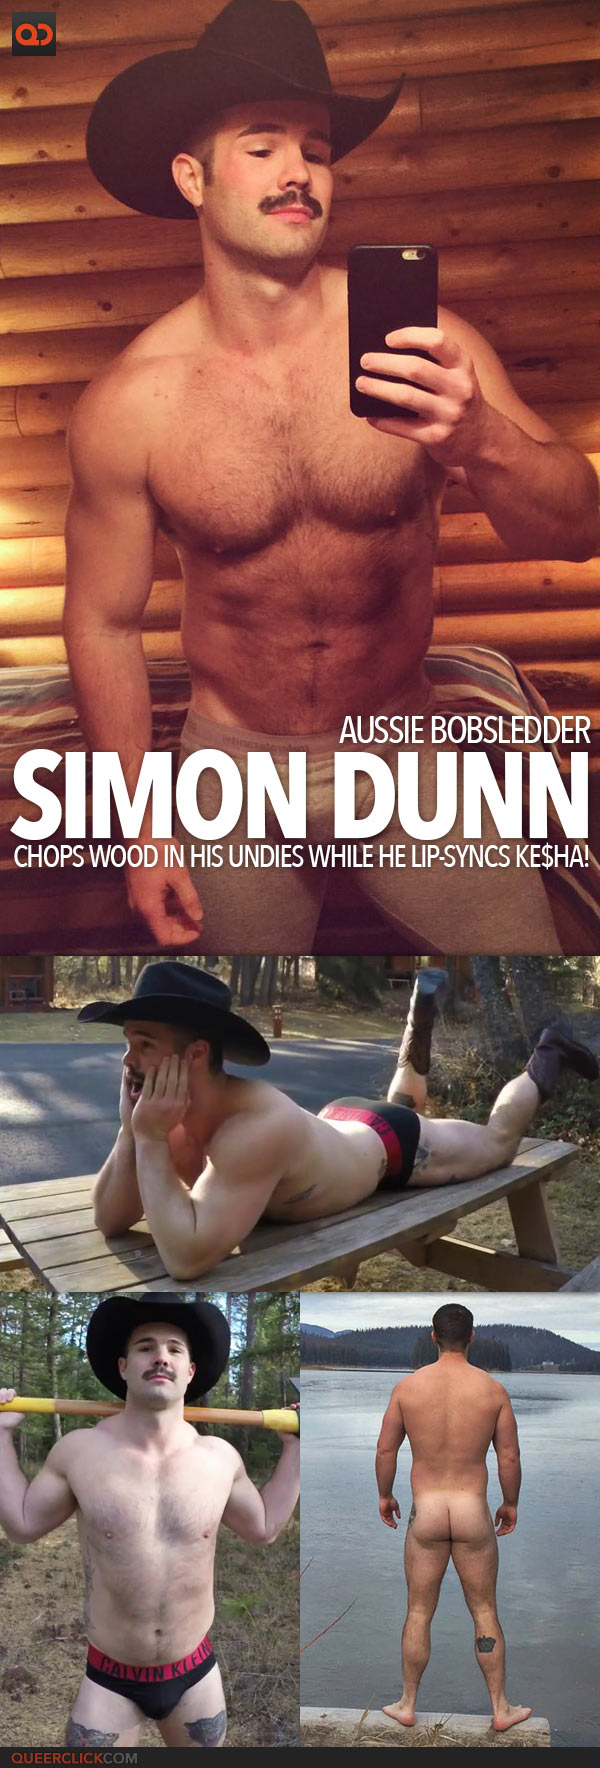 Aussie Bobsledded Simon Dunn Chops Wood In His Undies While Lip-Syncs Ke$ha!